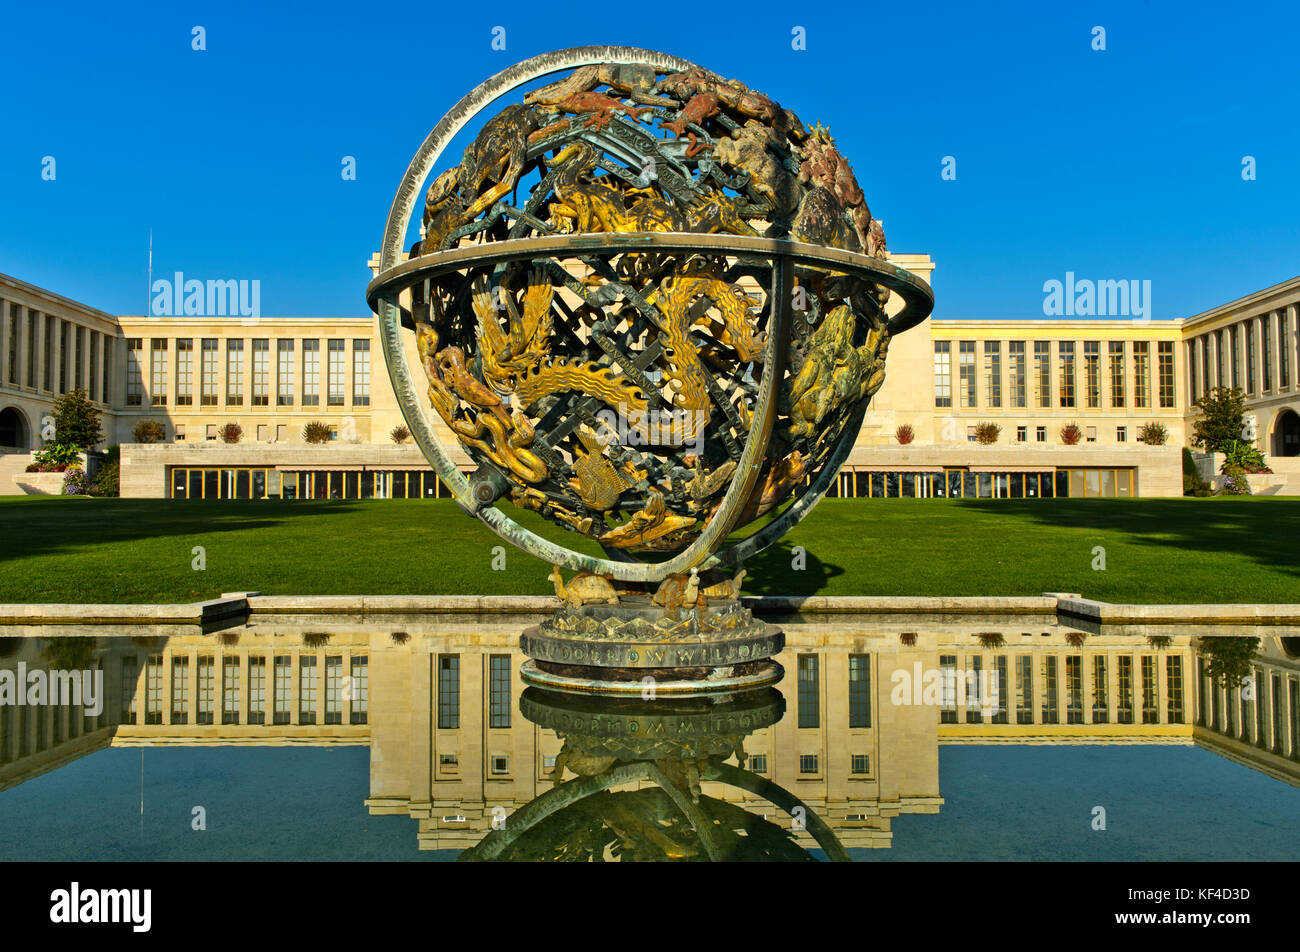 Monumento conmemorativo de la esfera celestial Woodrow Wilson, Palacio de las Naciones, Naciones Unidas, Ginebra, Suiza Foto de stock